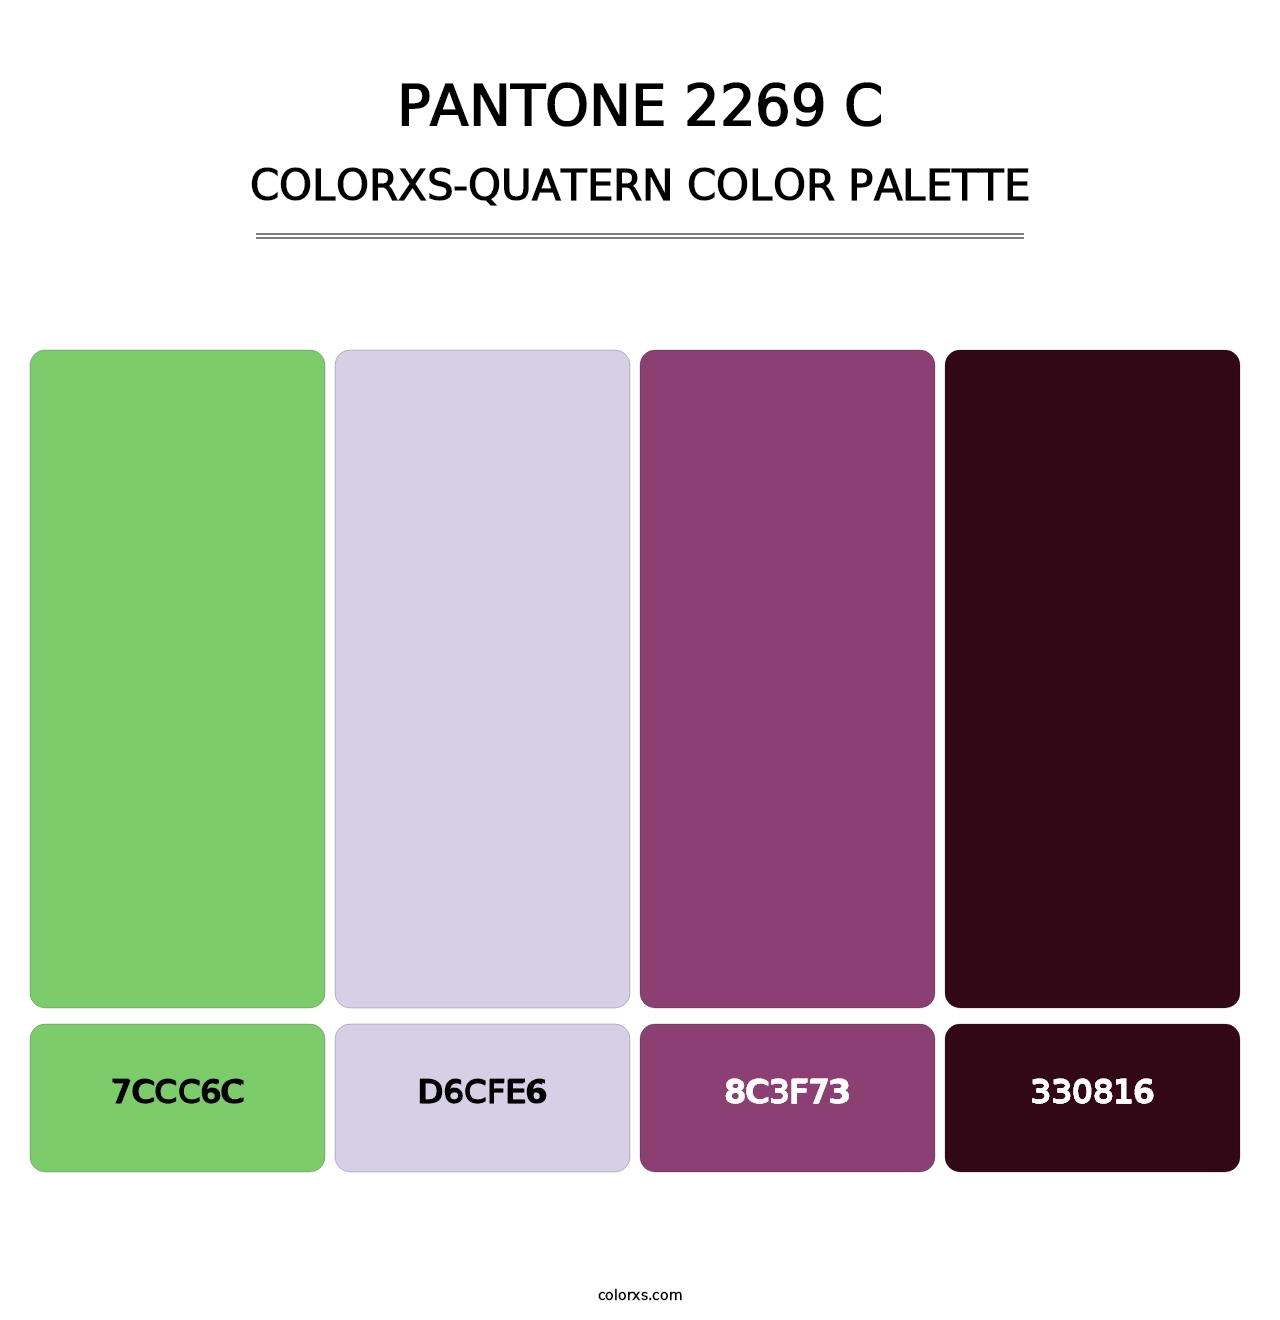 PANTONE 2269 C - Colorxs Quatern Palette